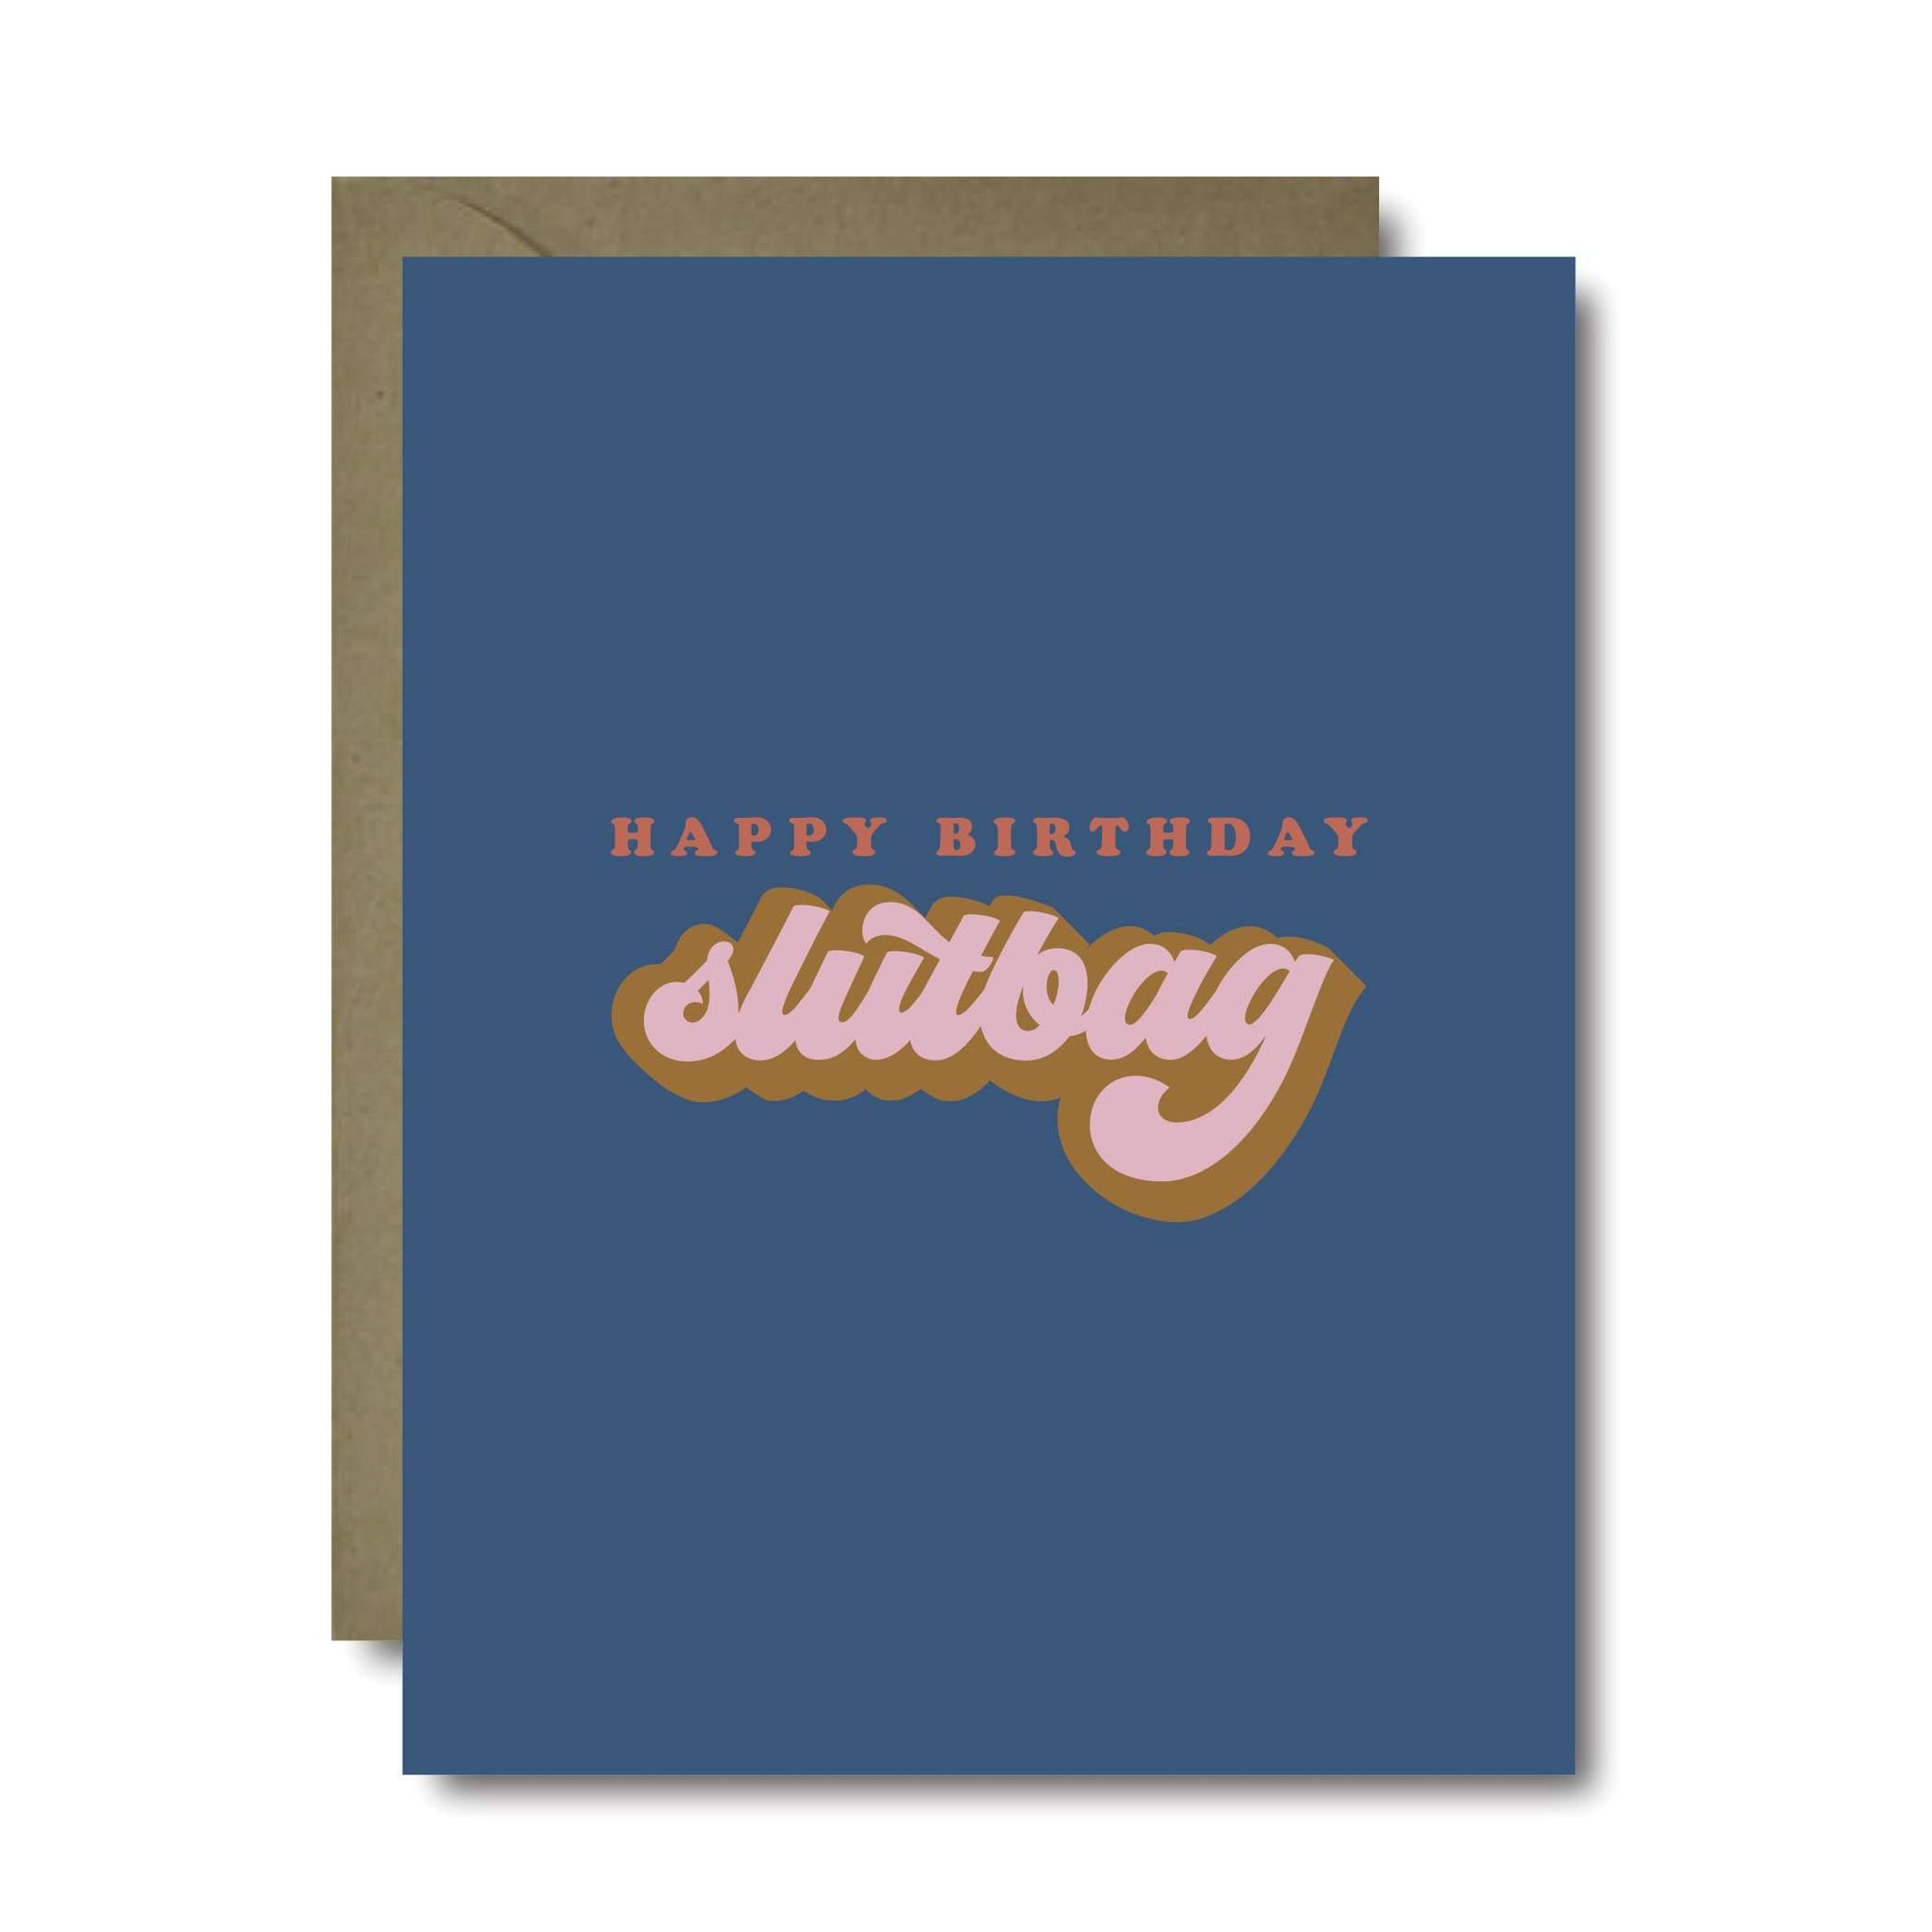 Slutbag Birthday Greeting Card | A2